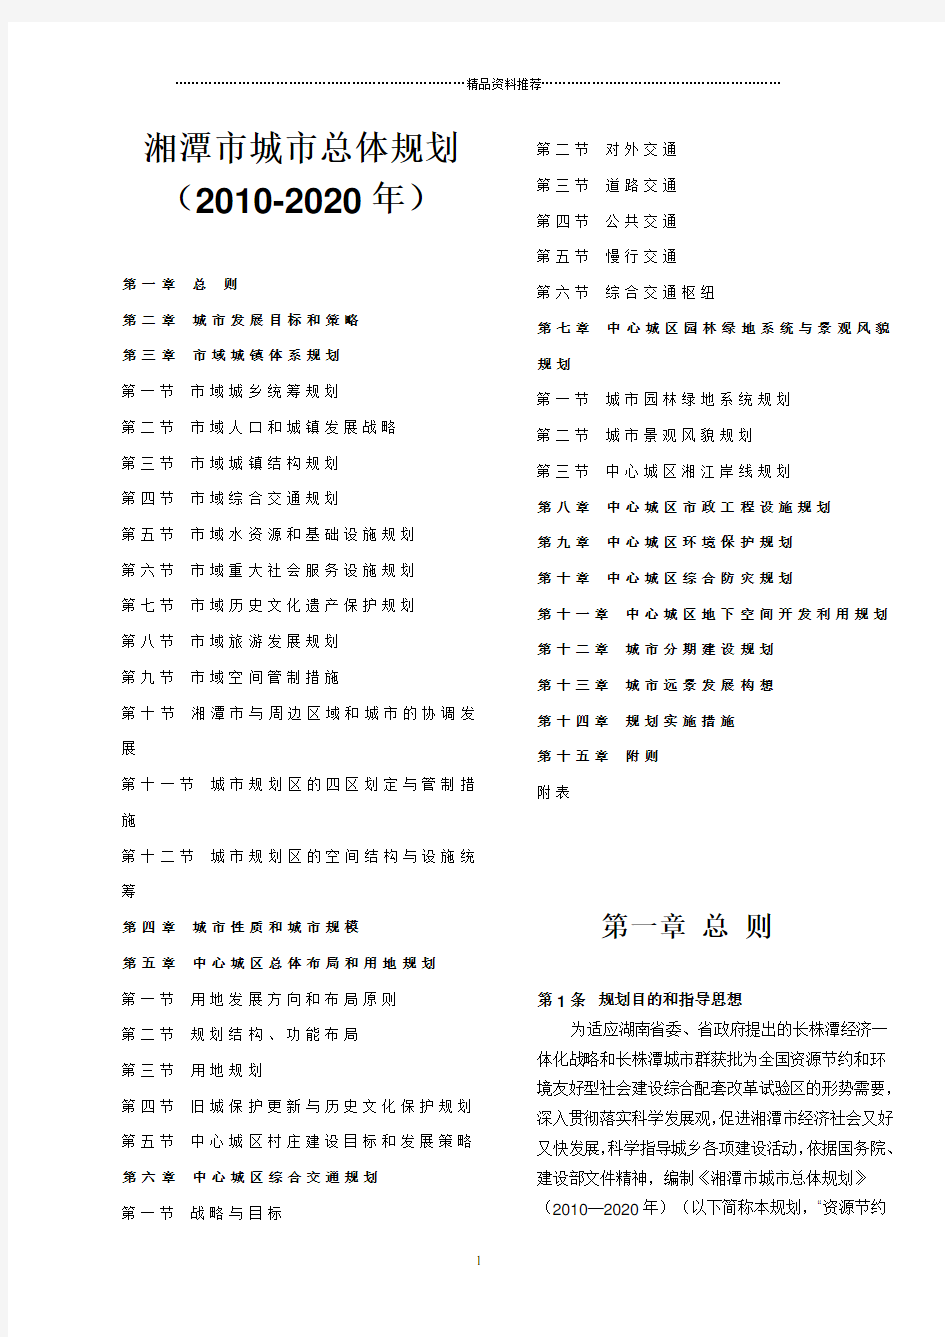 湘潭市城市总体规划(XXXX-2020年)两栏版